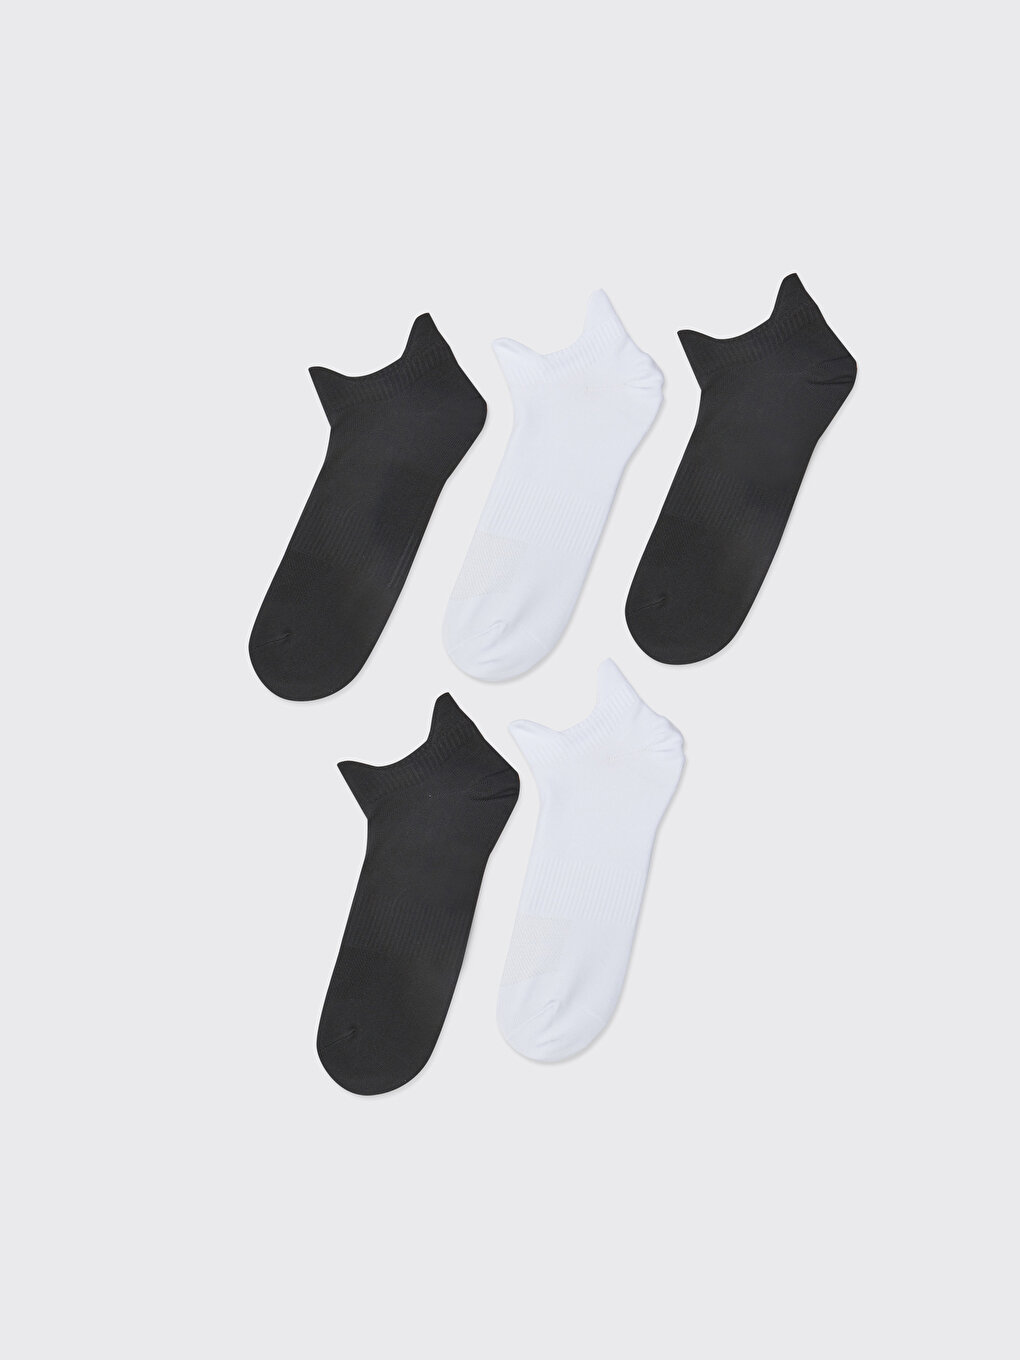 Мужские носки-пинетки, 5 шт. LCW ACCESSORIES, пряжа смешанного цвета полосатые мужские носки 3 шт в упаковке lcw accessories